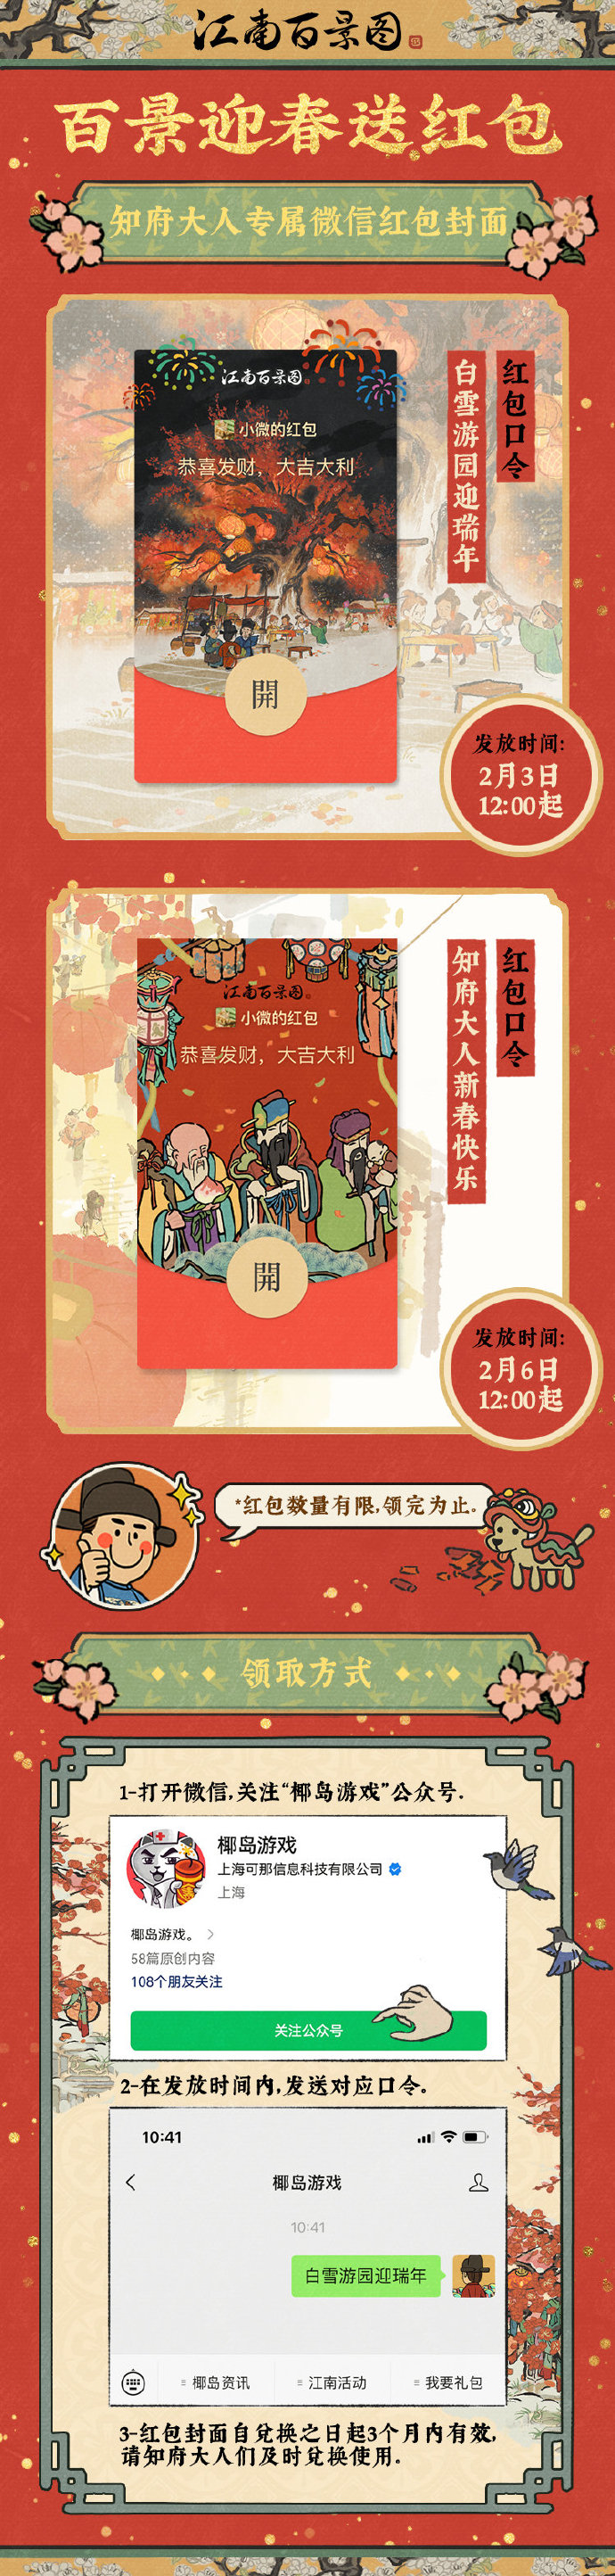 《江南百景图》龙年新春红包封面2月3日限时发放